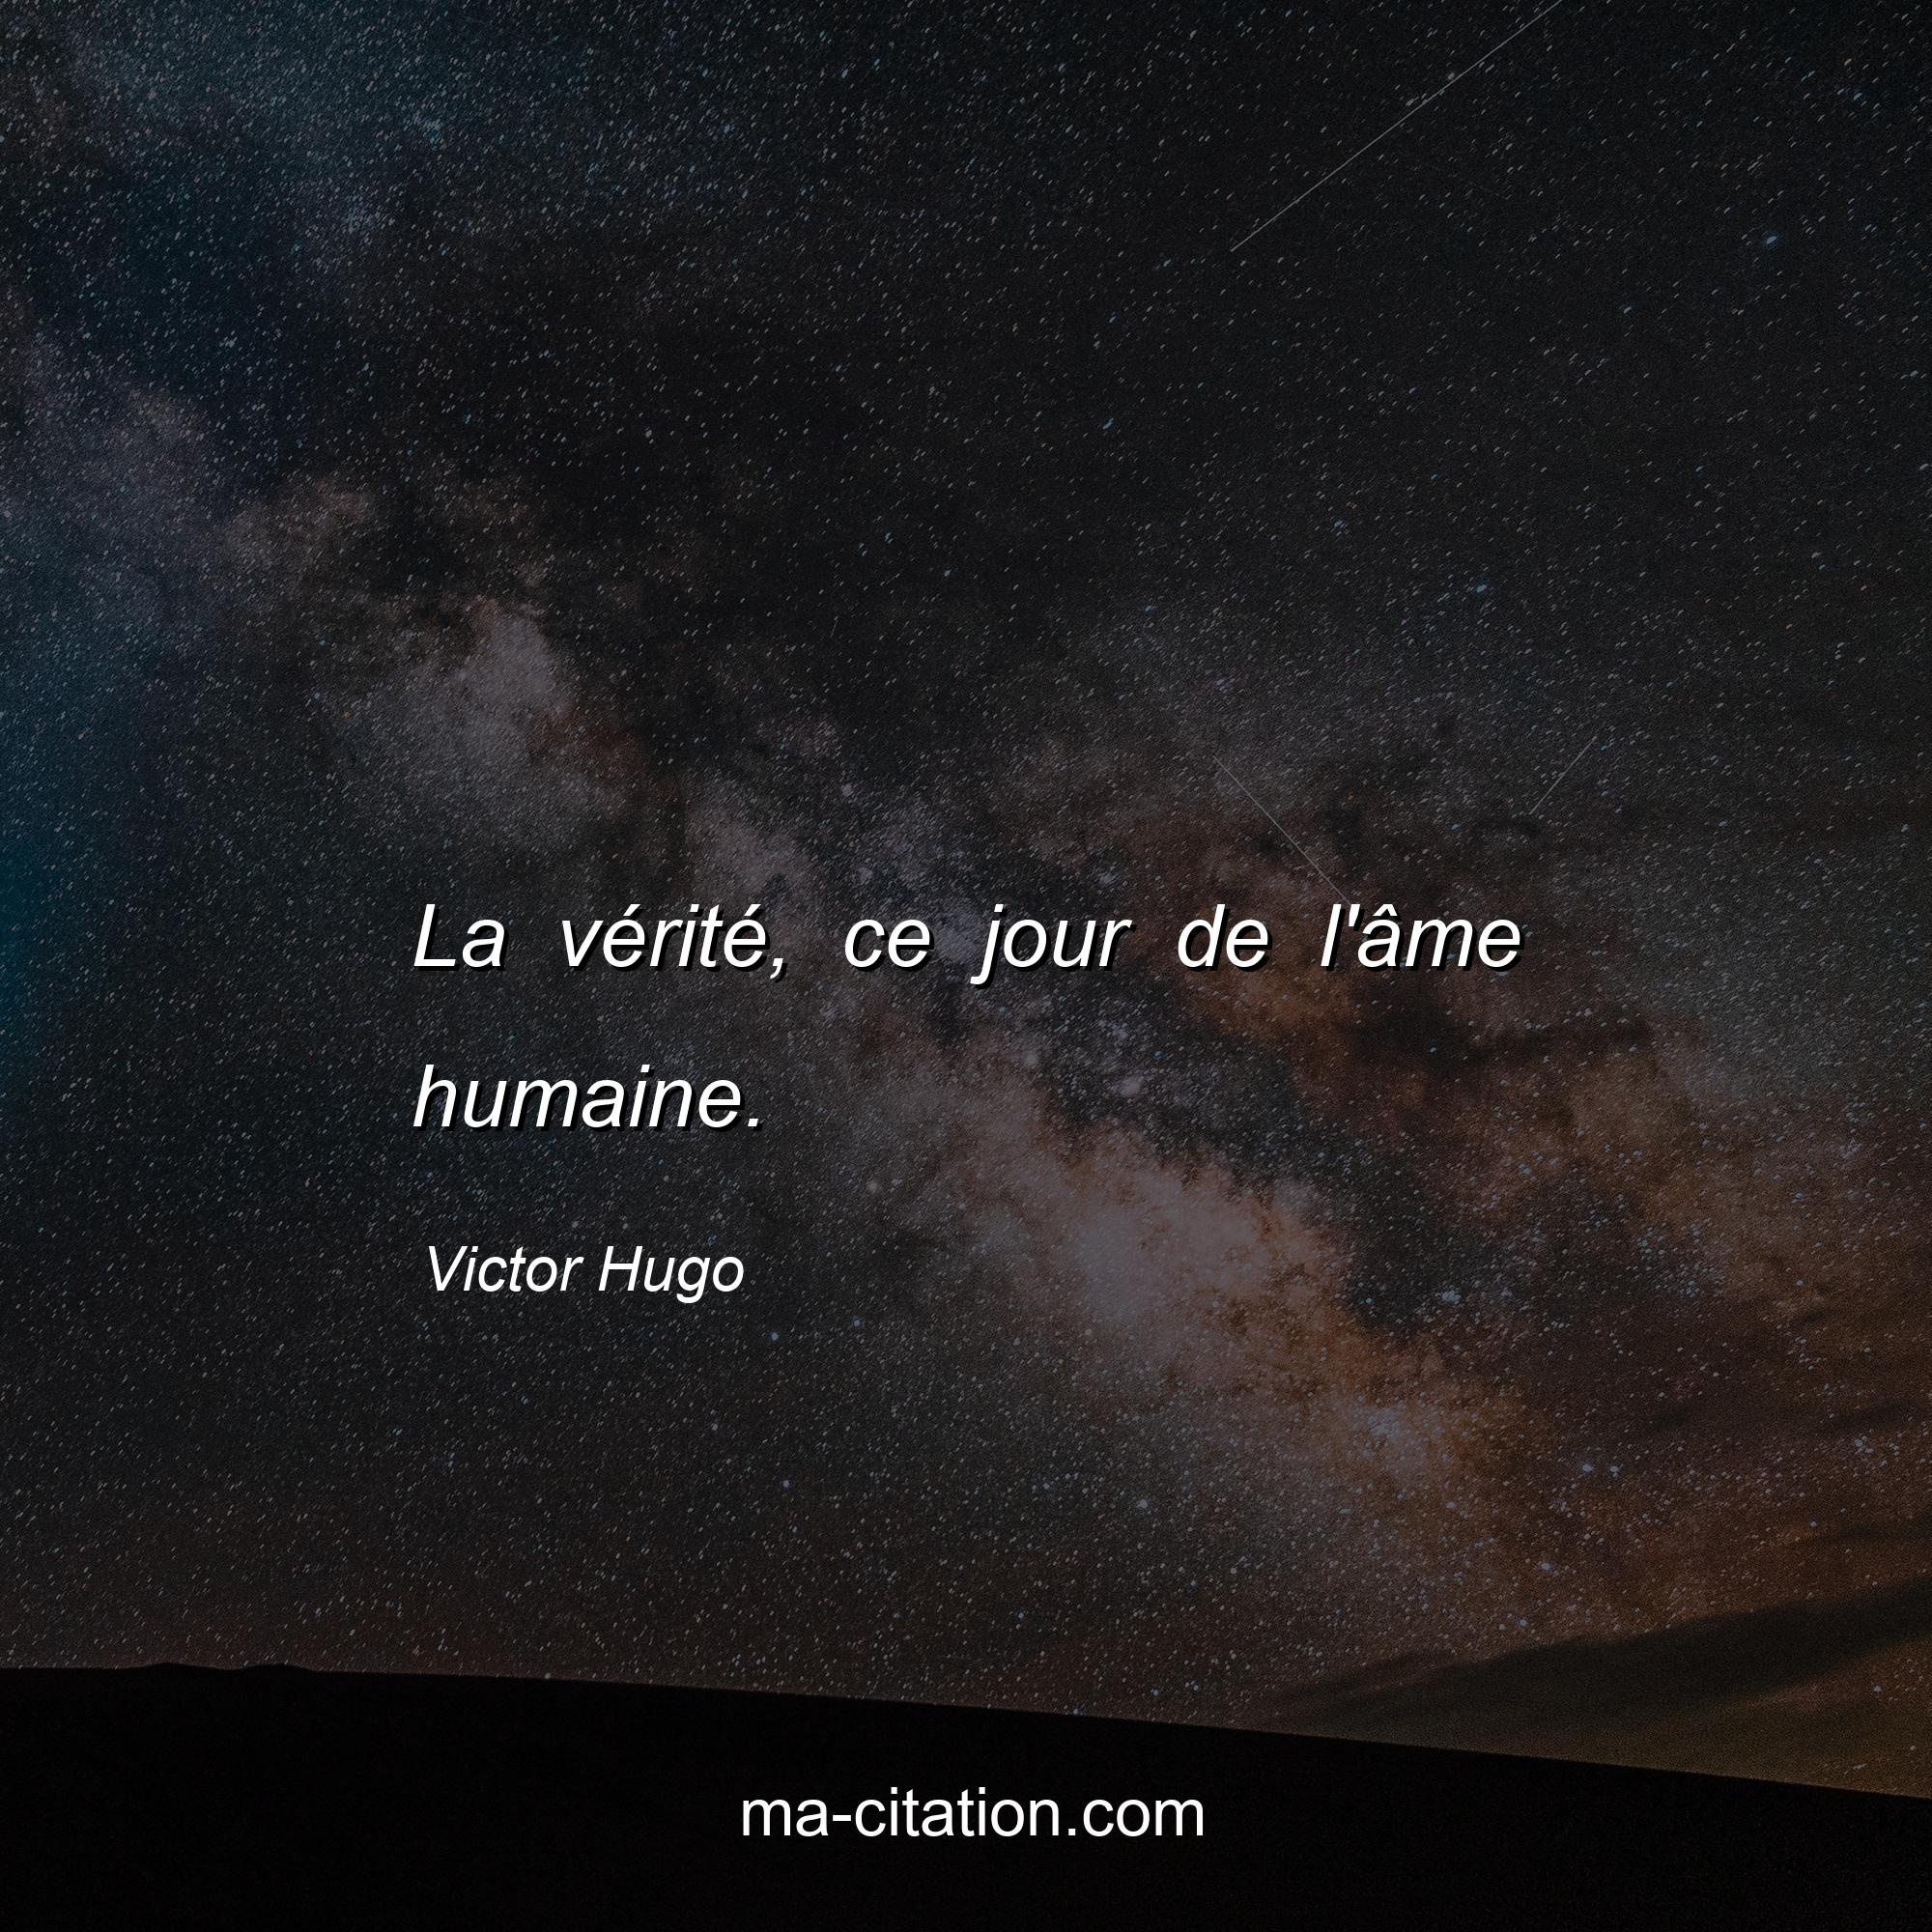 Victor Hugo : La vérité, ce jour de l'âme humaine.